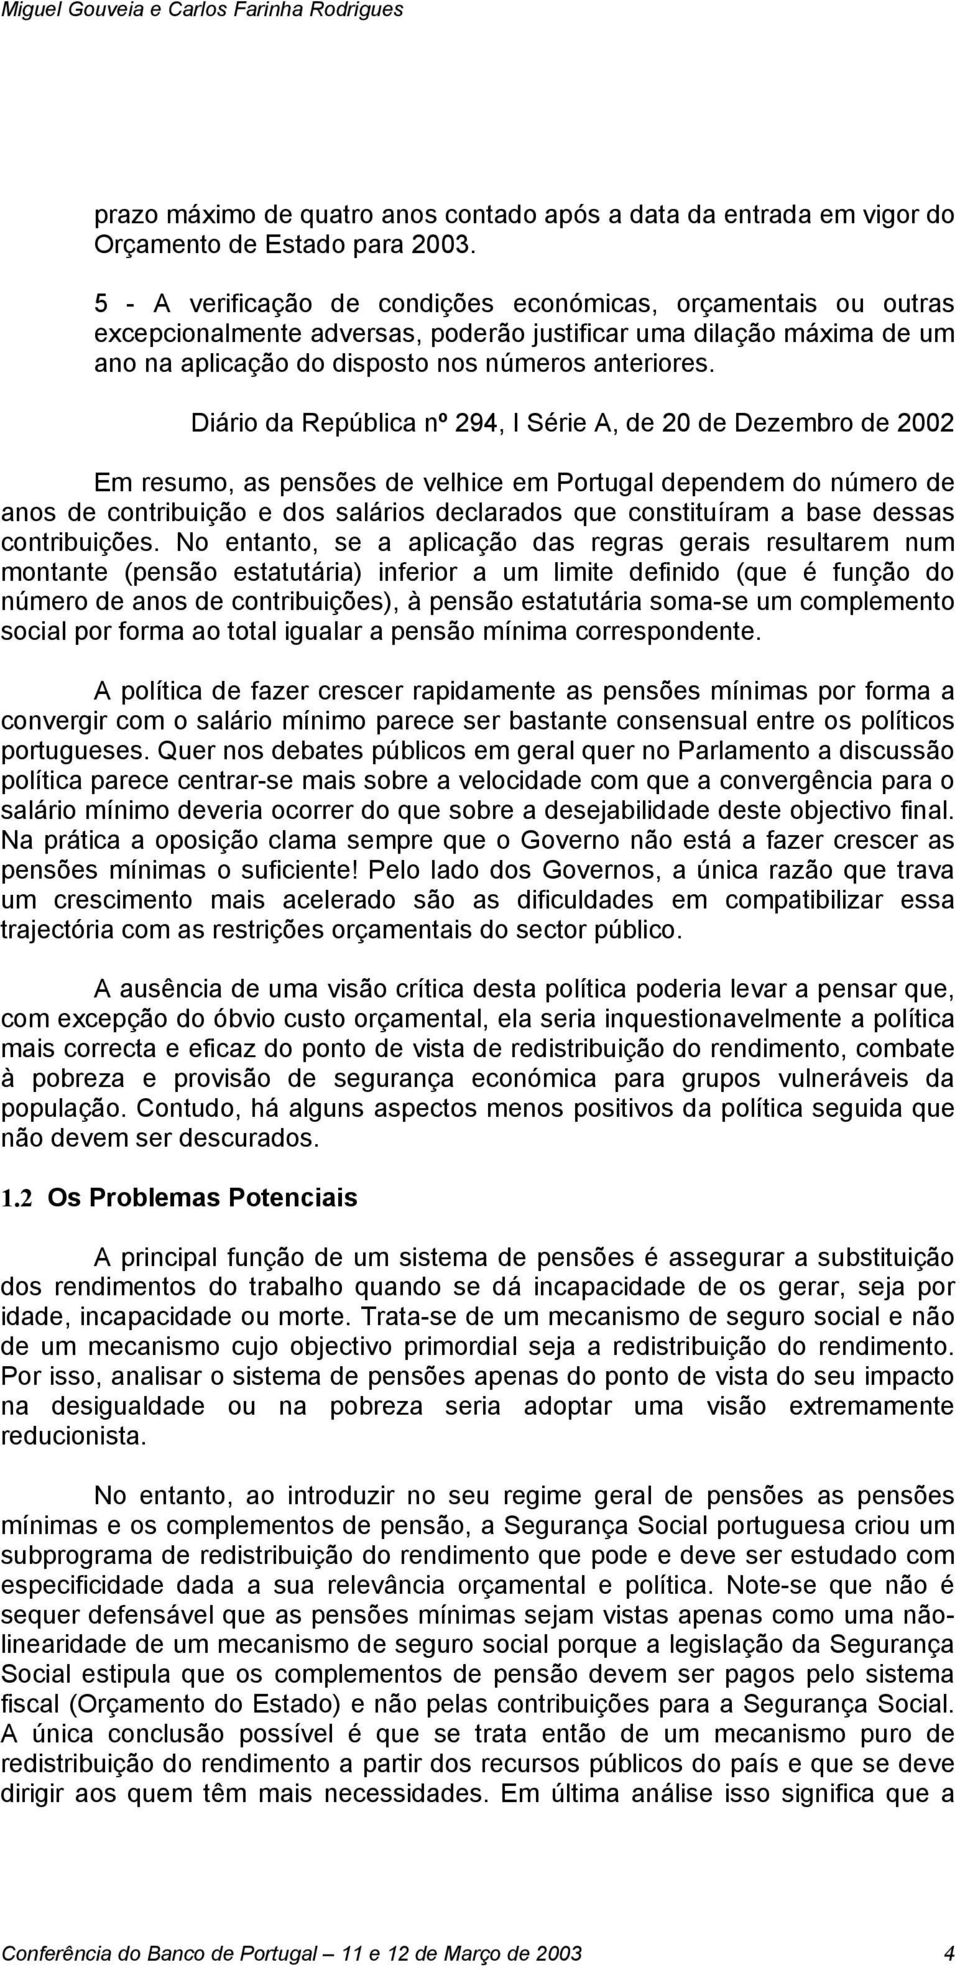 Diário da República nº 294, I Série A, de 20 de Dezembro de 2002 Em resumo, as pensões de velhice em Portugal dependem do número de anos de contribuição e dos salários declarados que constituíram a